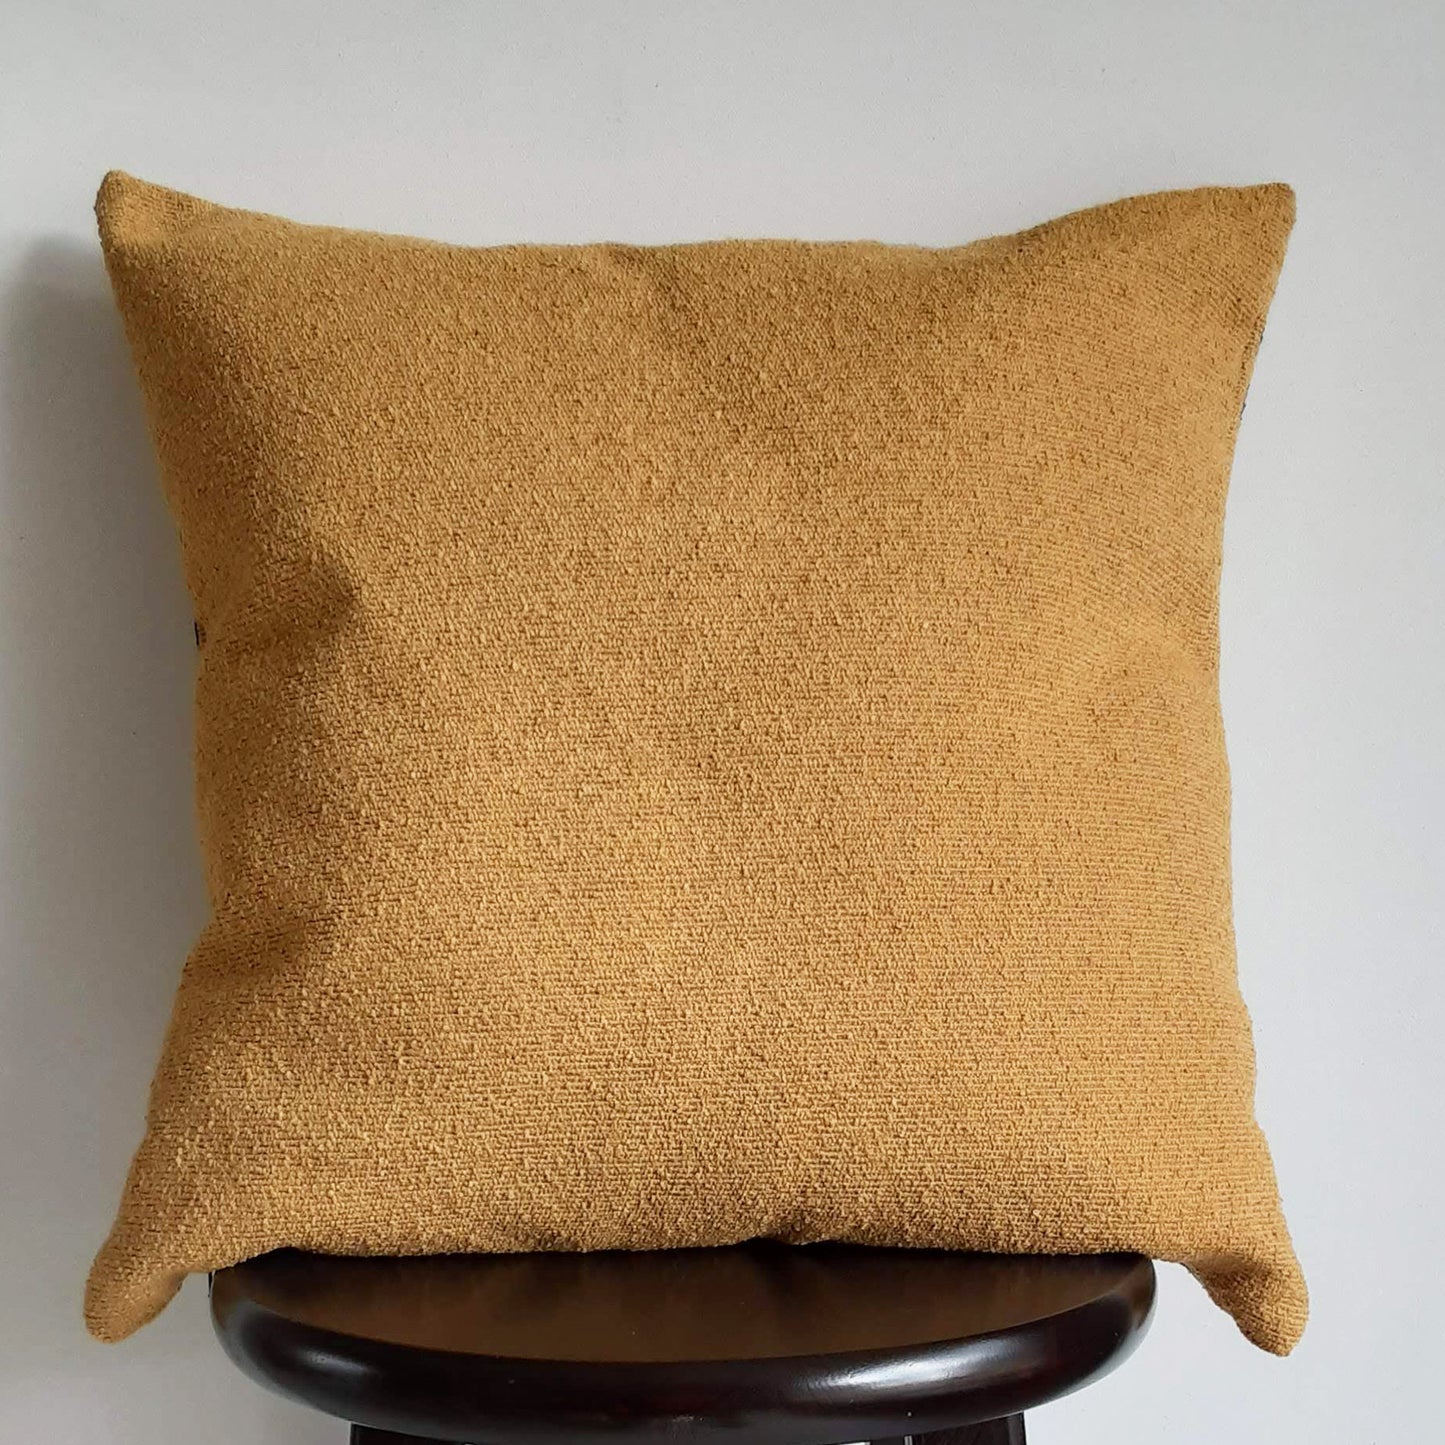 Modern Boho Farmhouse PIllow 18x18 Inch  Mustard Throw Pillow, Modern Mudcloth Lines Print, Ochre Golden Yellow Textured Pillows